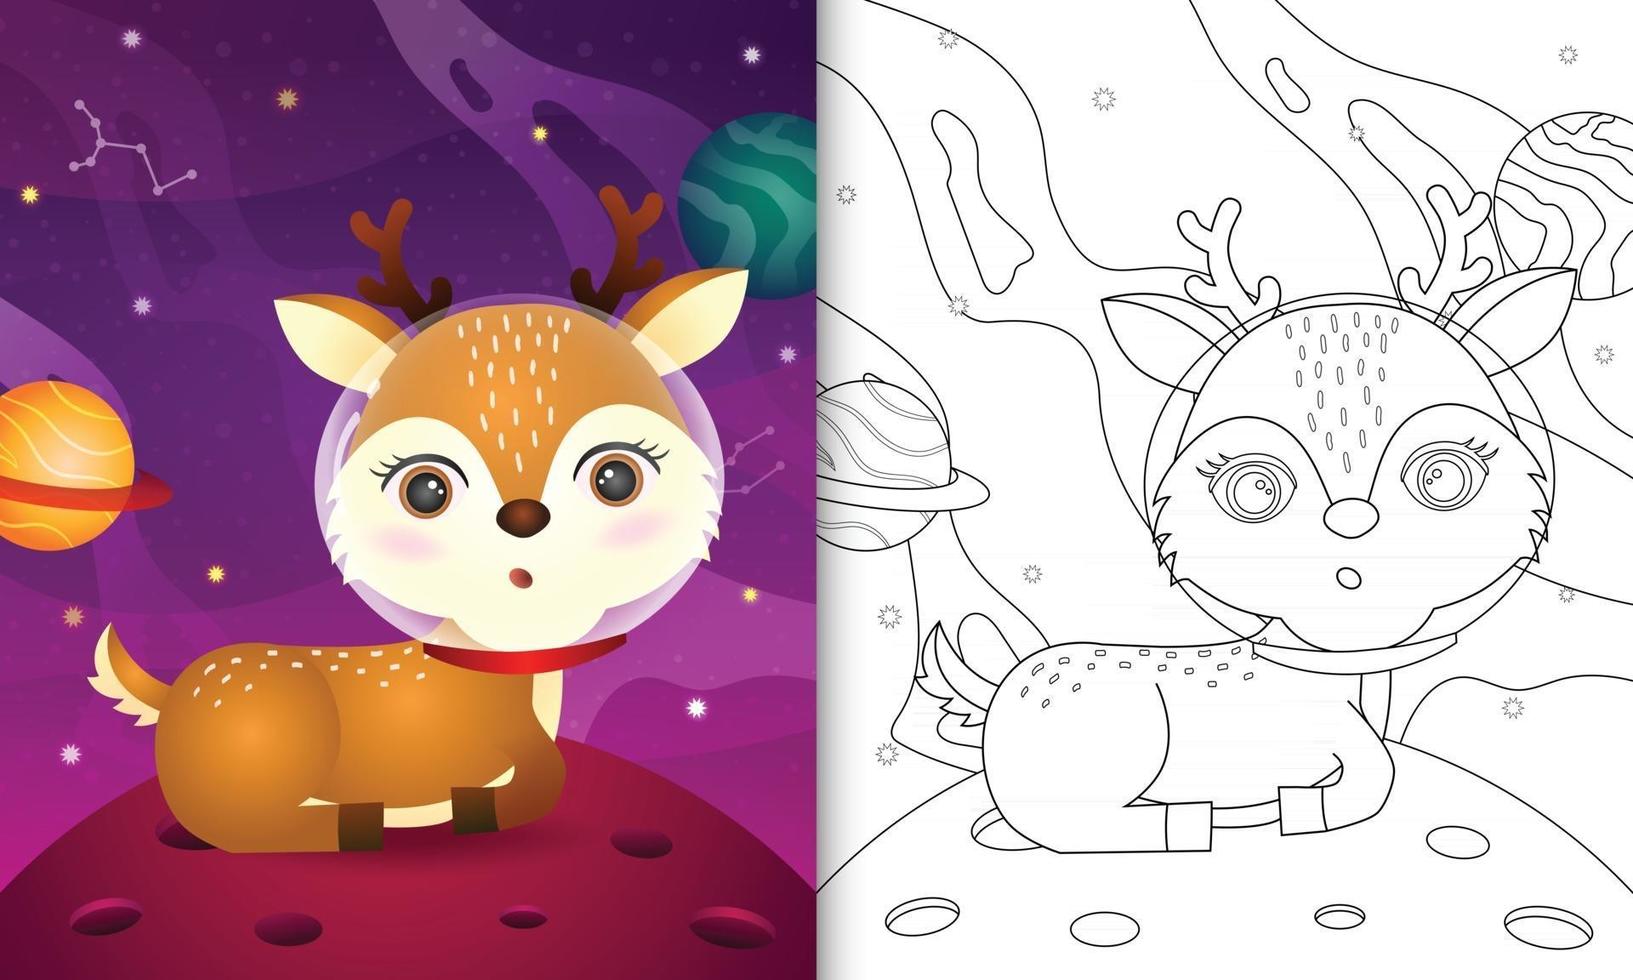 libro da colorare per bambini con un simpatico cervo nella galassia spaziale vettore